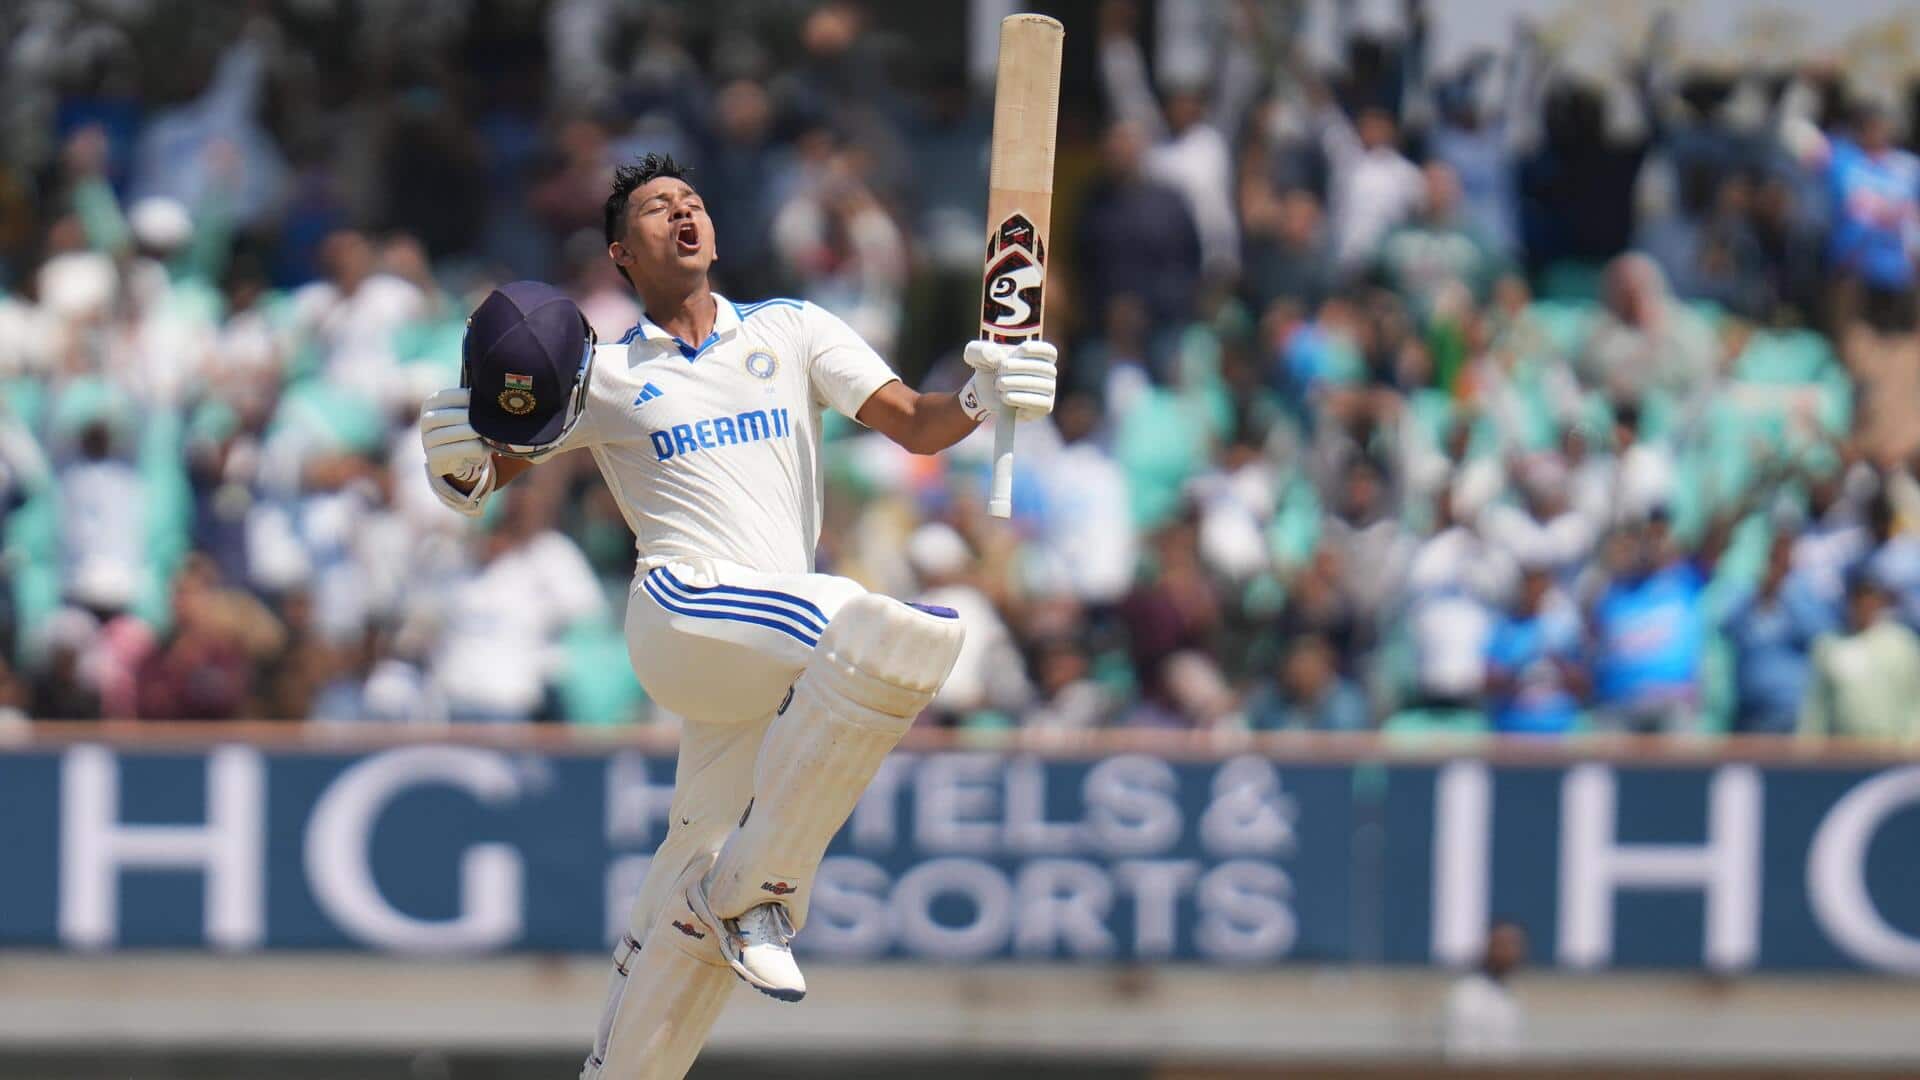 भारत बनाम इंग्लैंड: पांचवे टेस्ट में ये उपलब्धि हासिल कर सकते हैं यशस्वी जायसवाल